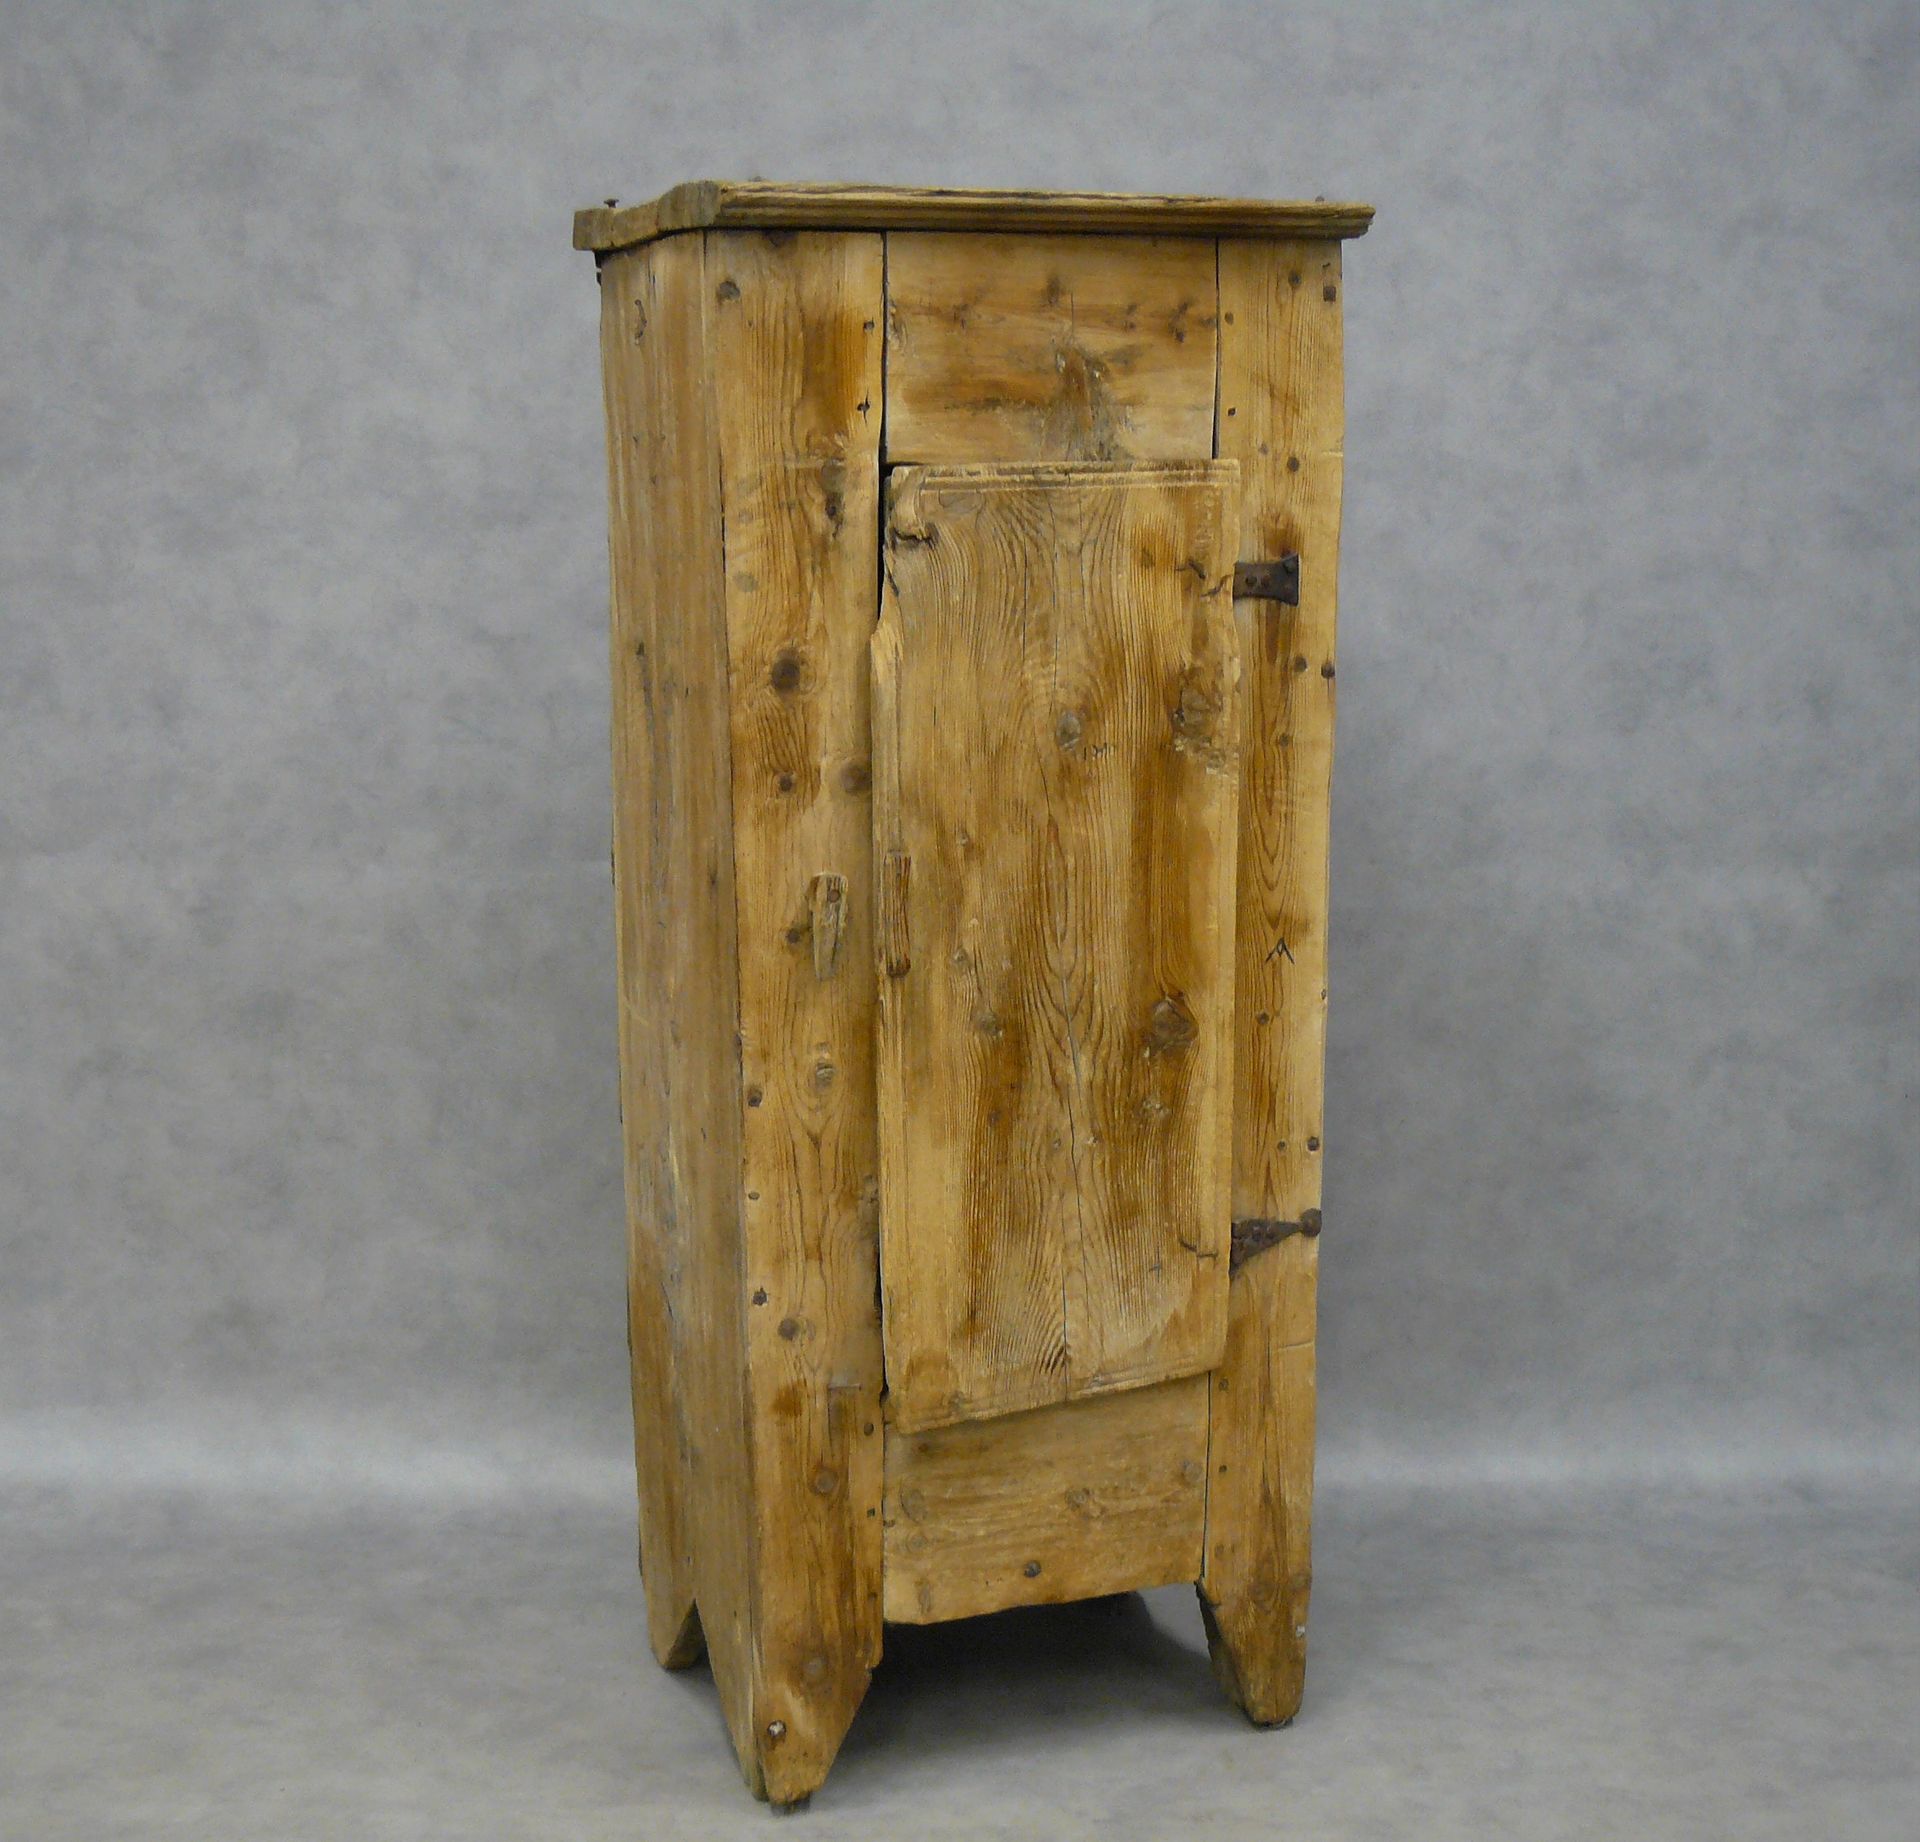 Null un piccolo armadio rustico di pino con una porta - 148 x 63 x 46,5 cm